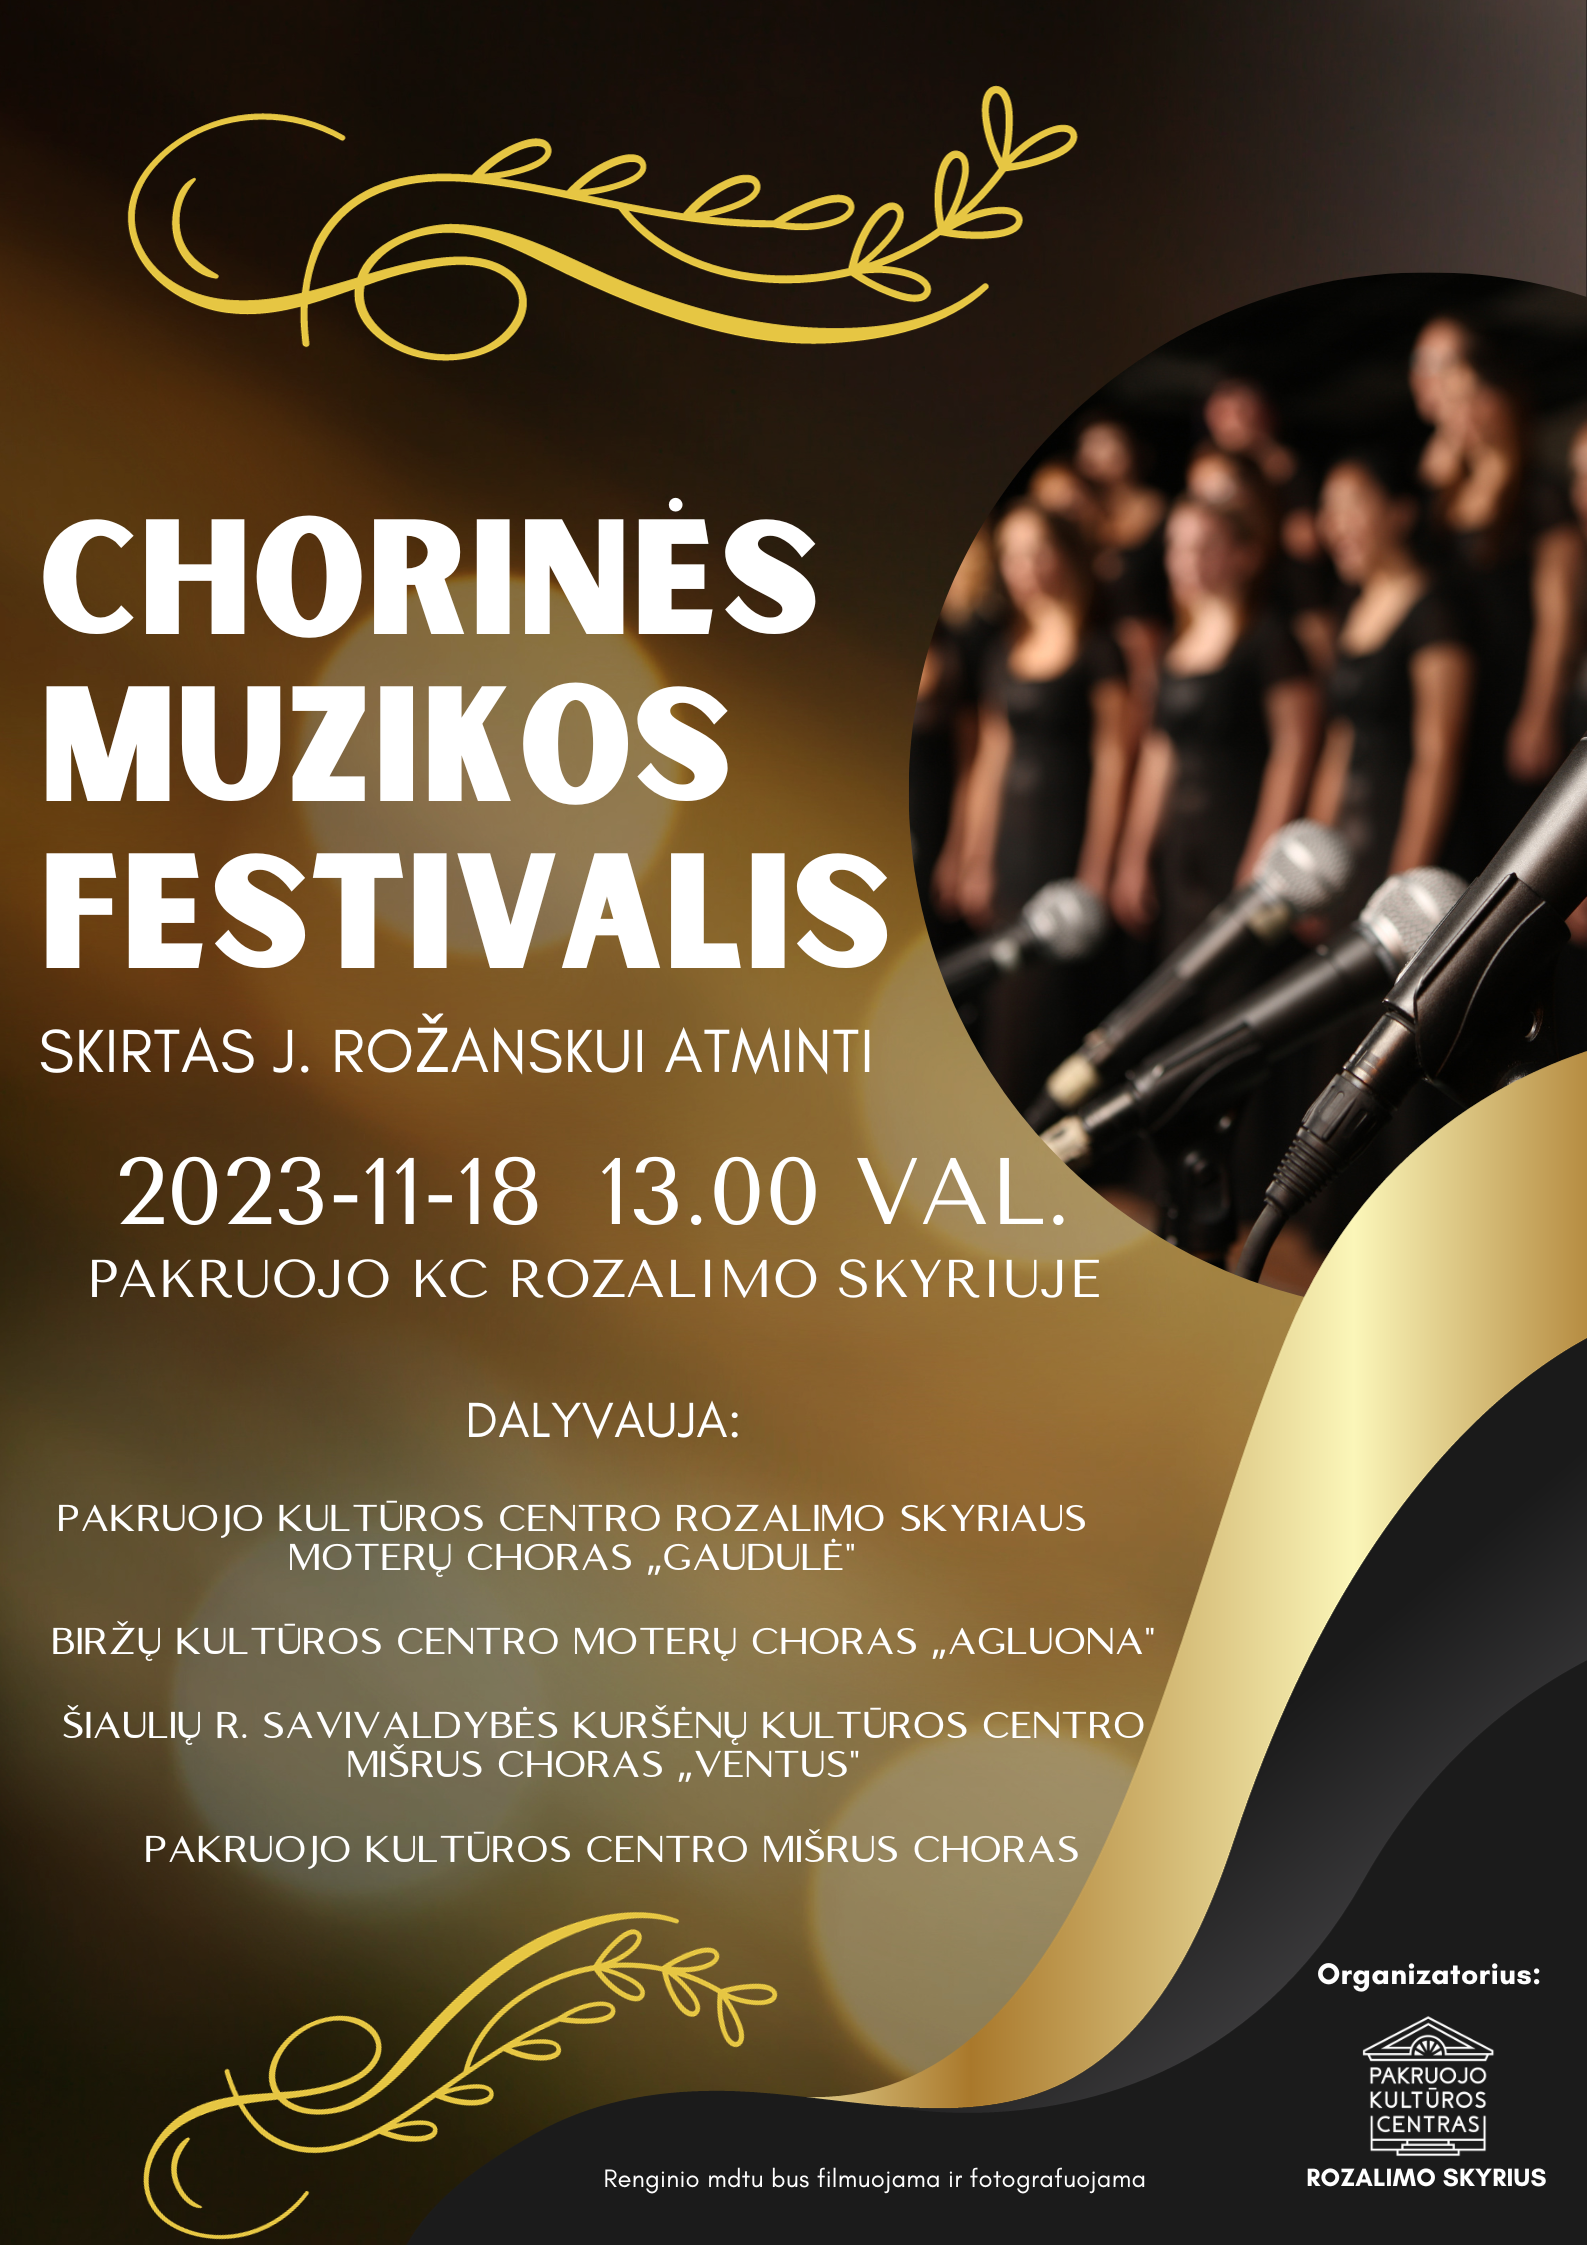 ROZALIMAS: Respublikinis chorinės muzikos festivalis, skirtas choro dirigentui Juozui Rožanskui atminti